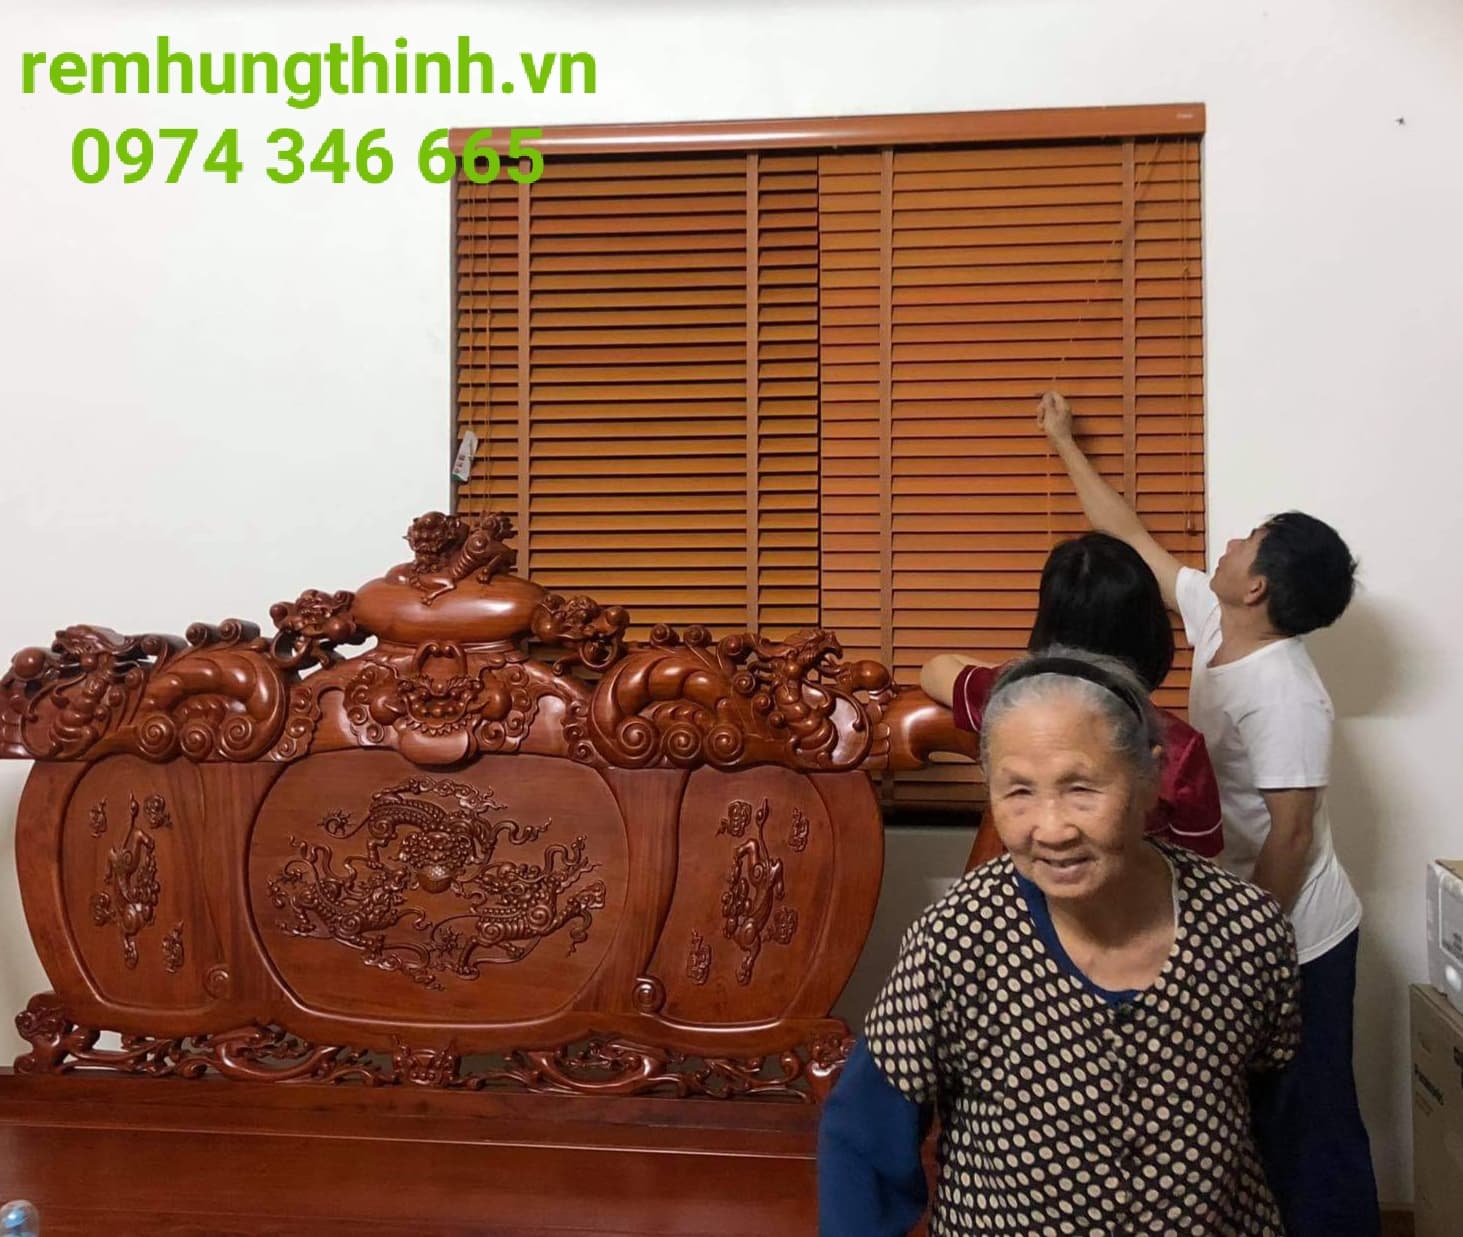 Rèm sáo gỗ được làm từ gỗ tự nhiên tại xã Trường Yên huyện Chương Mỹ, Hà Nội